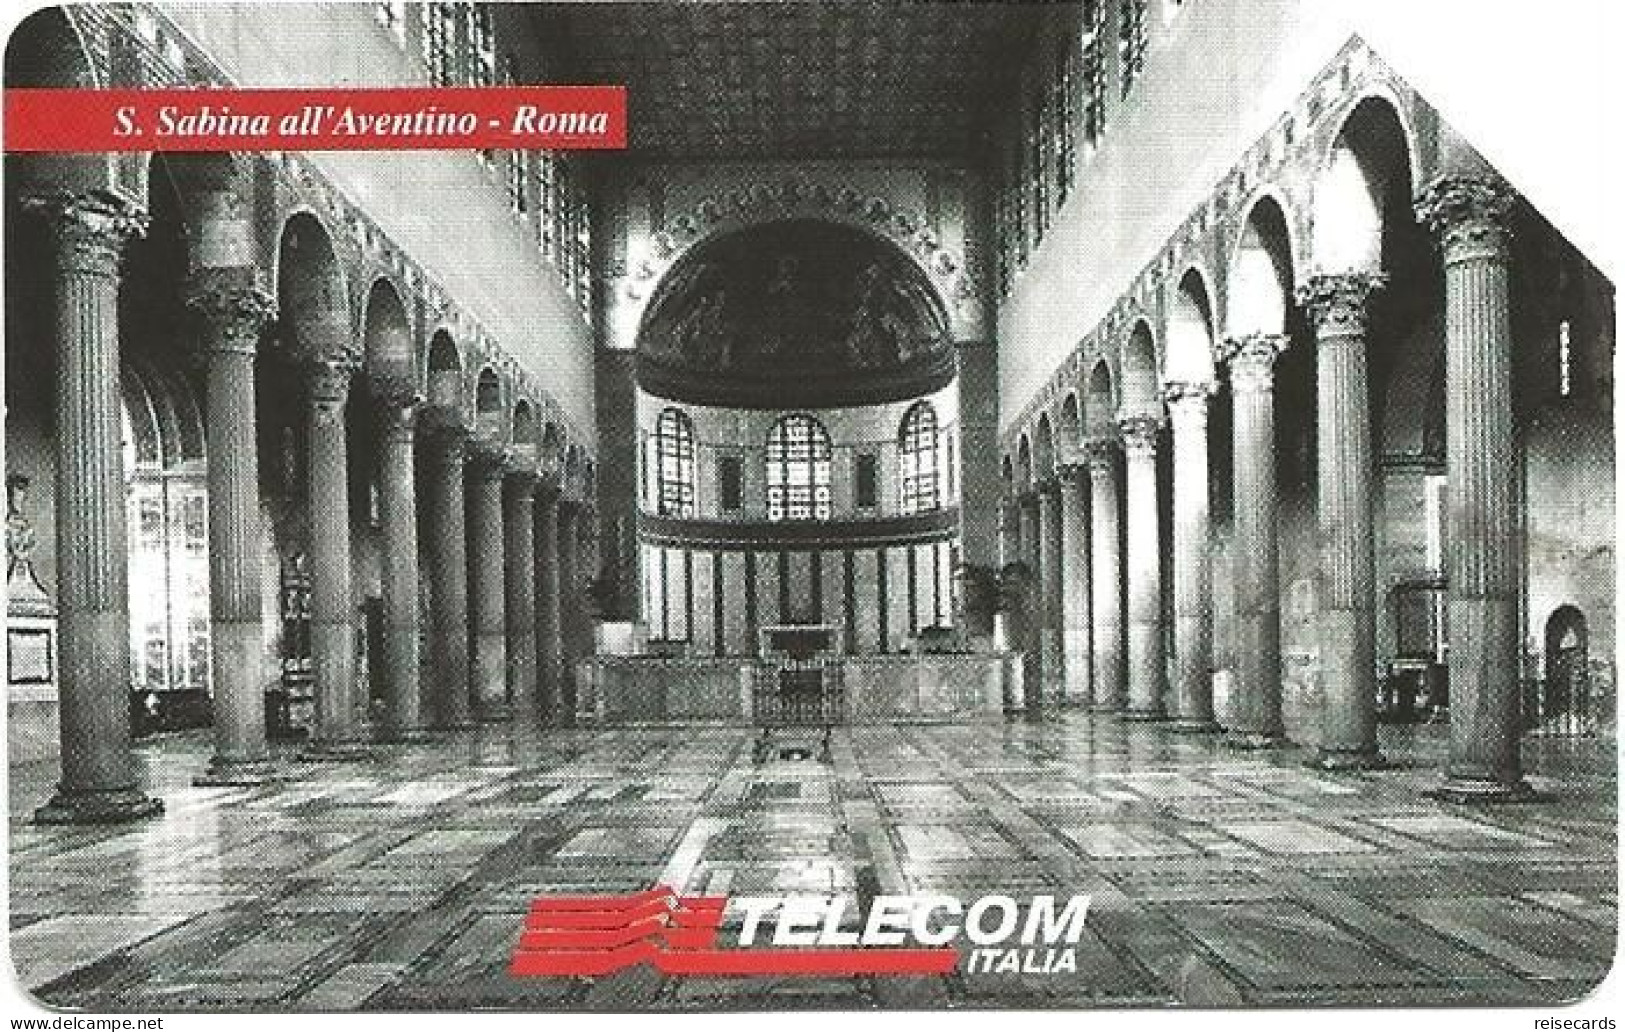 Italy: Telecom Italia - Il Culto Dell'Arte, S. Sabina All'Aventino Roma - Publiques Publicitaires